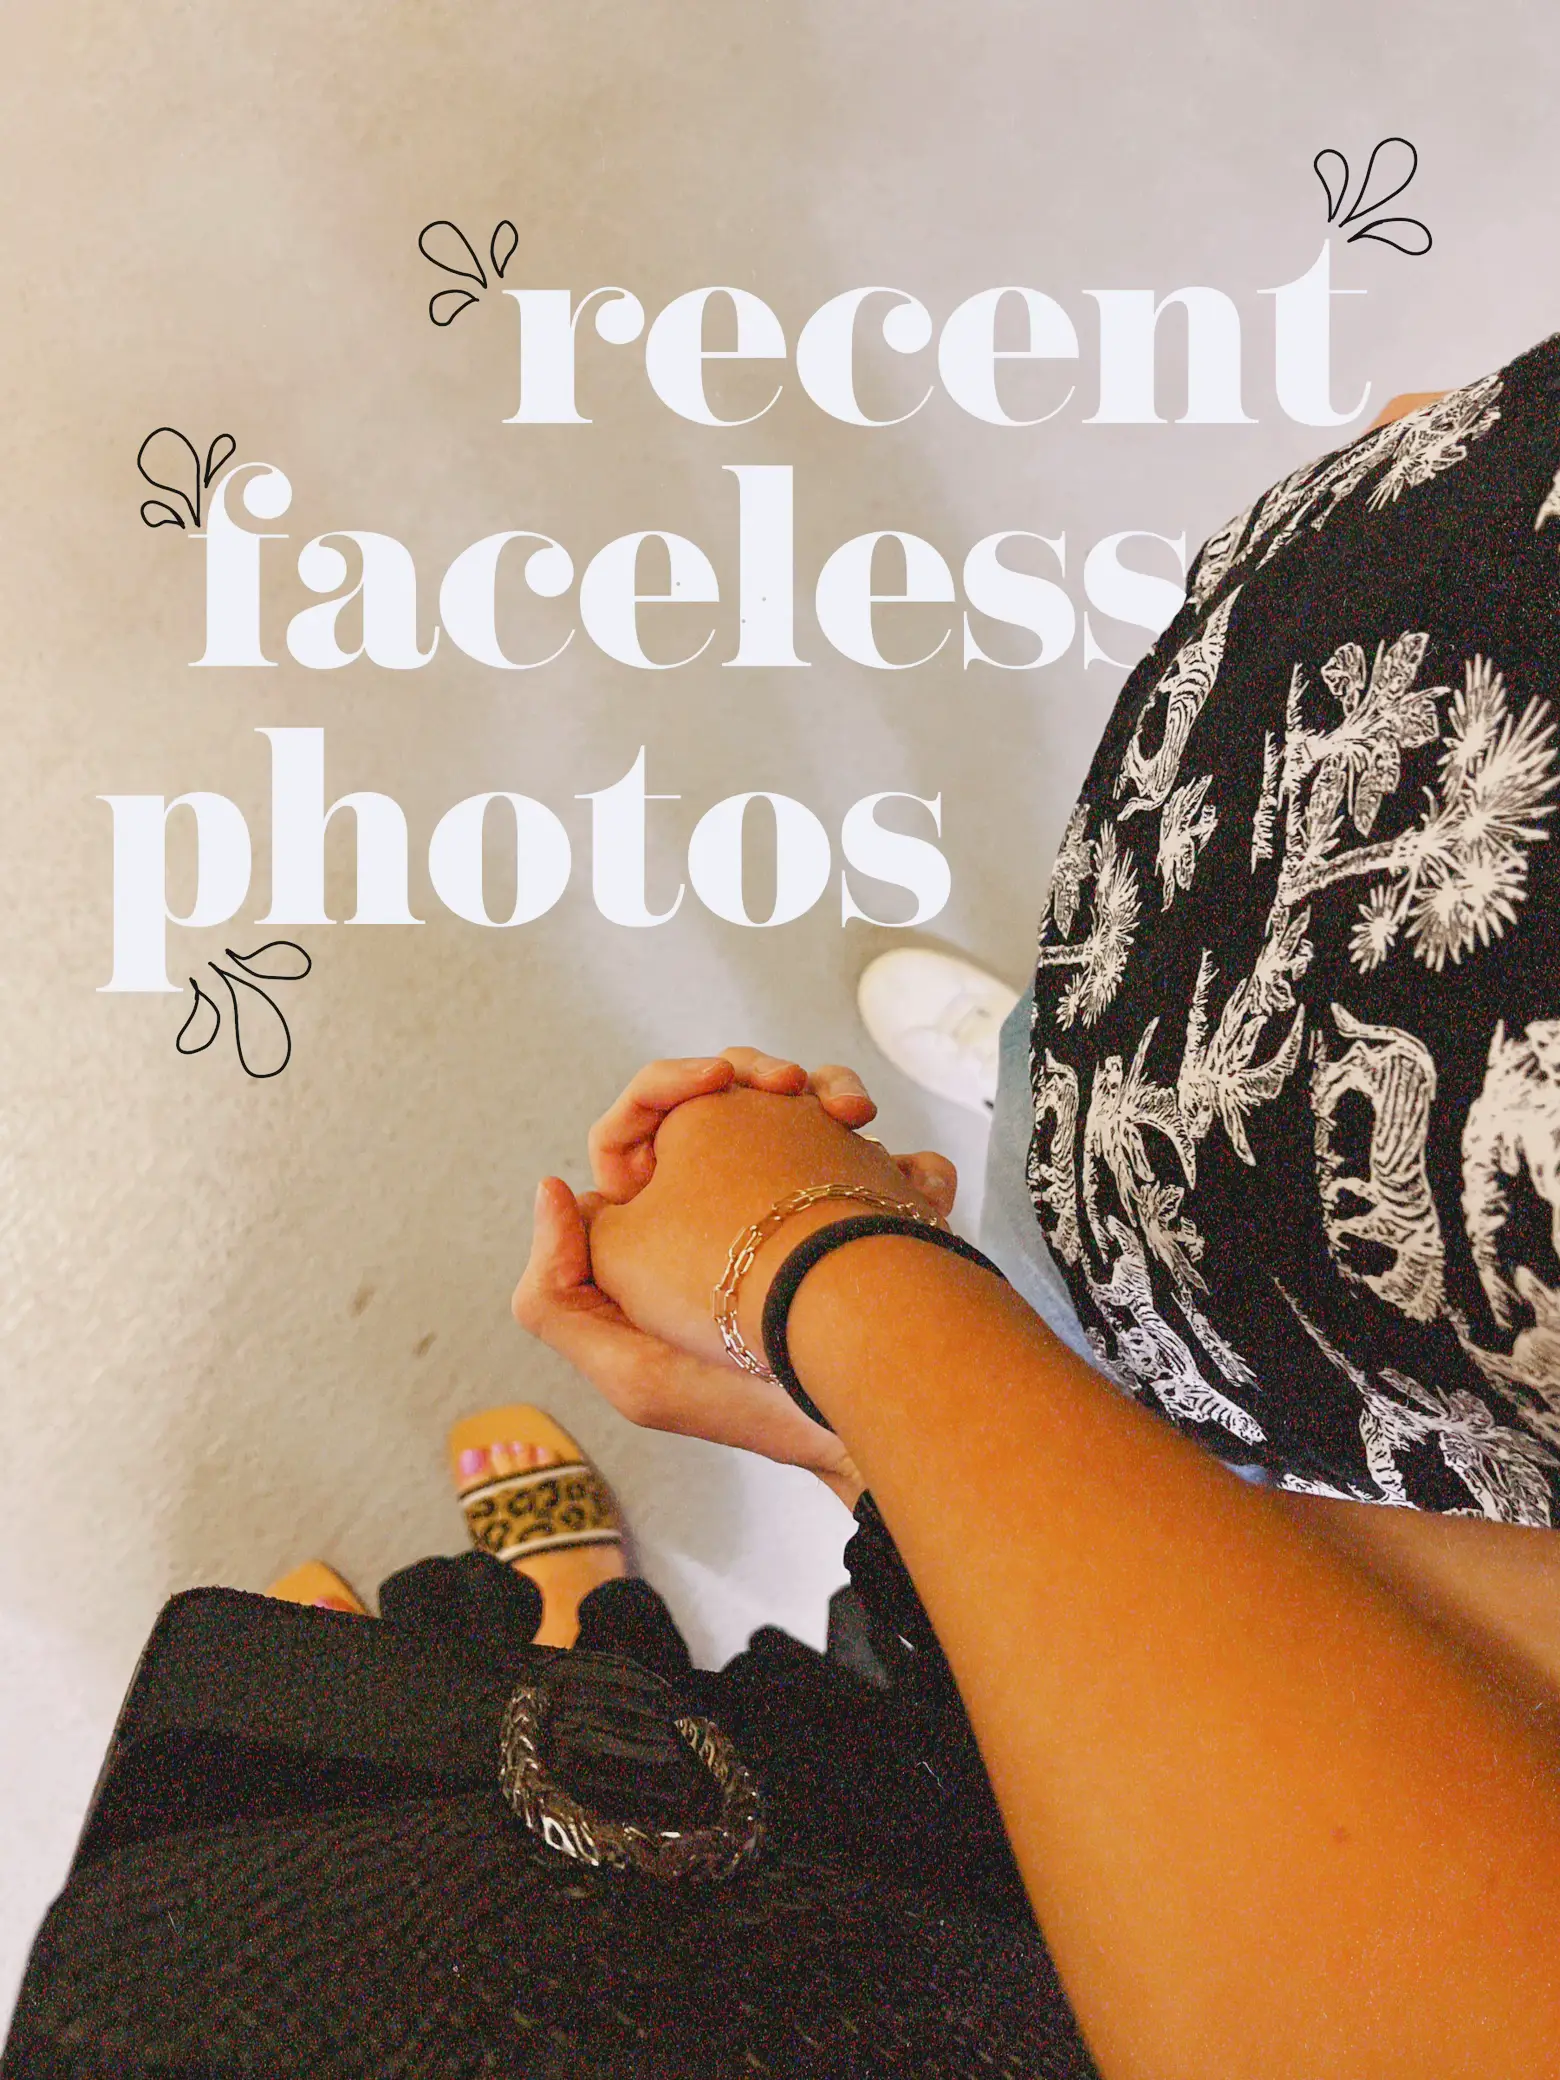 my recent faceless photos's images(0)